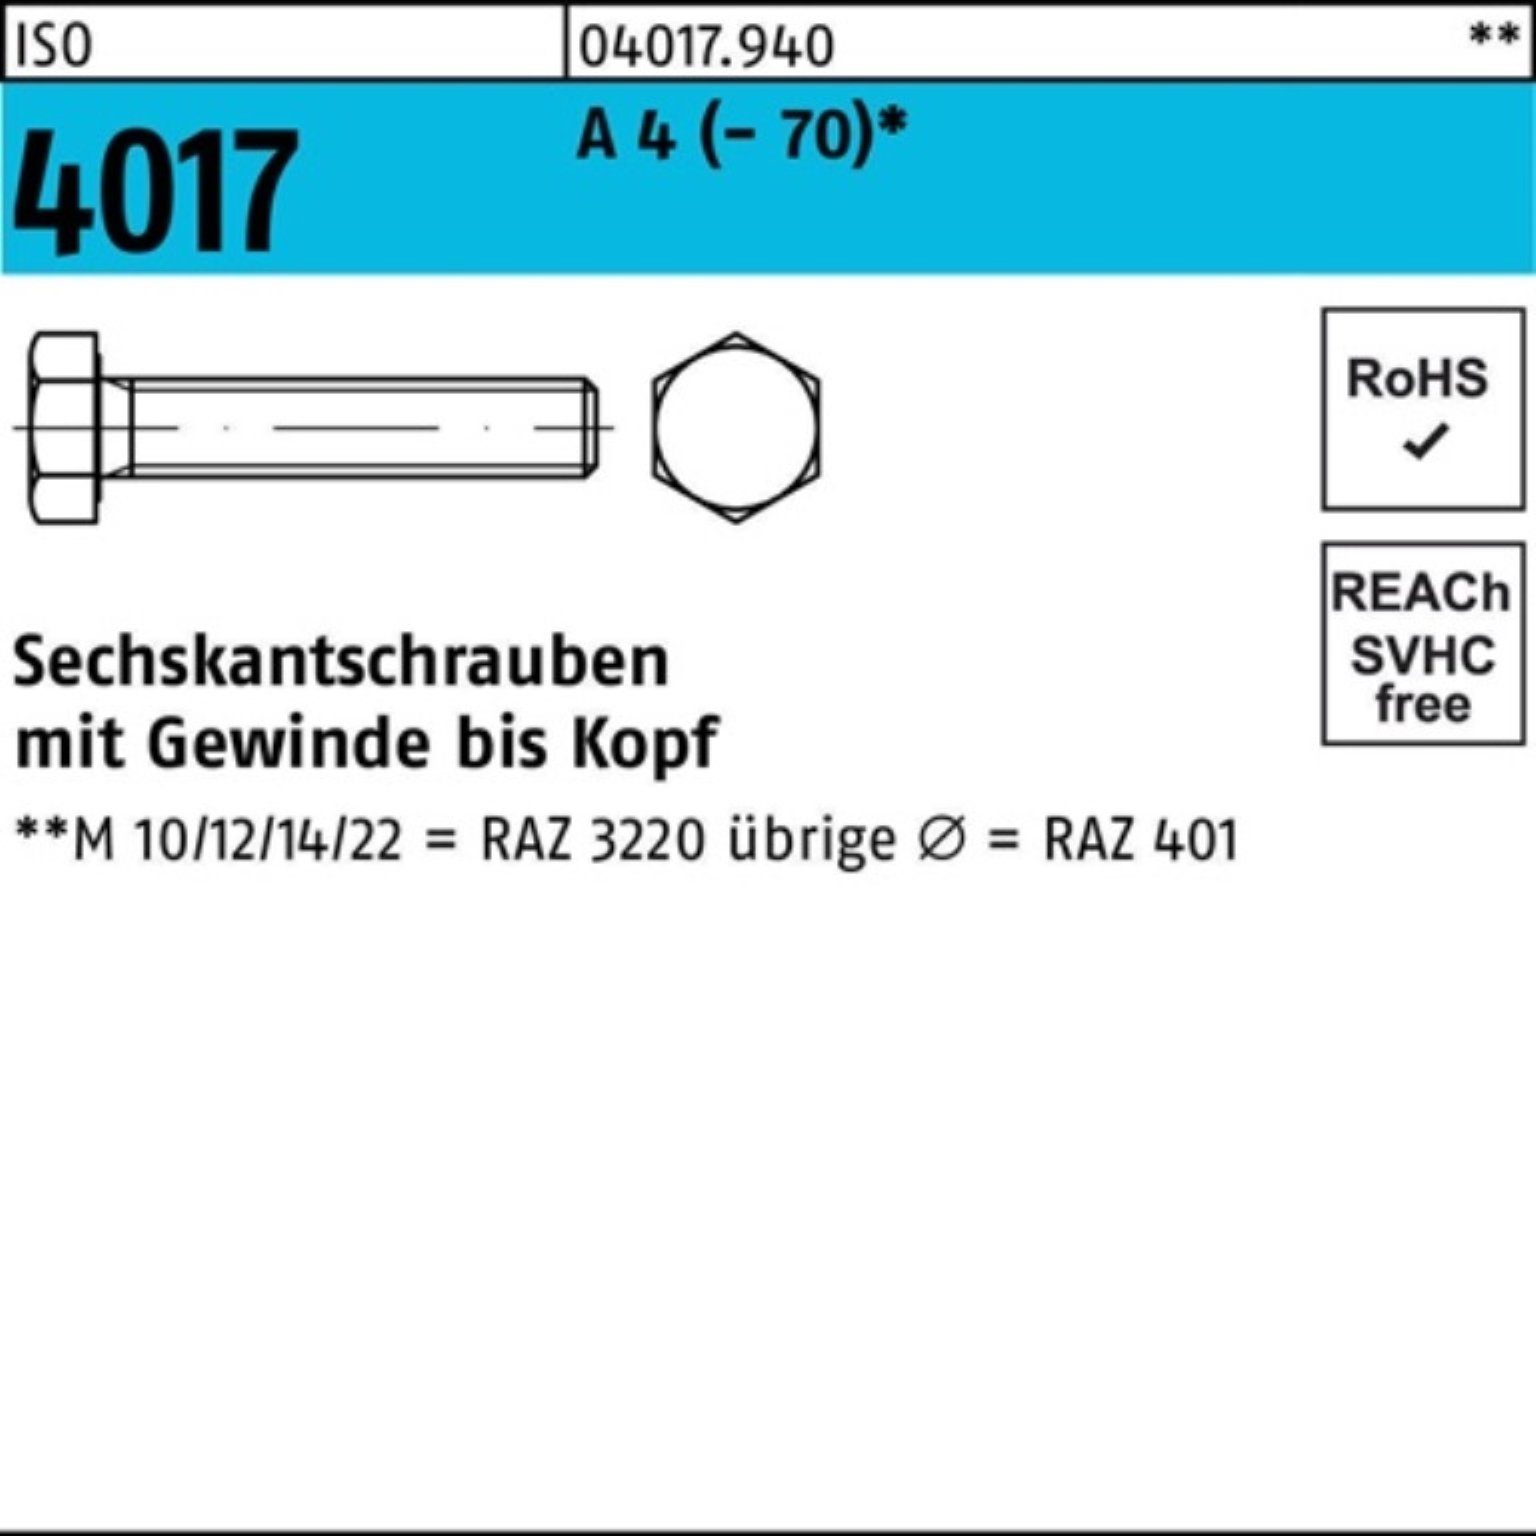 Bufab Sechskantschraube 200er Pack Sechskantschraube ISO 4017 VG M8x 10 A 4 (70) 200 Stück